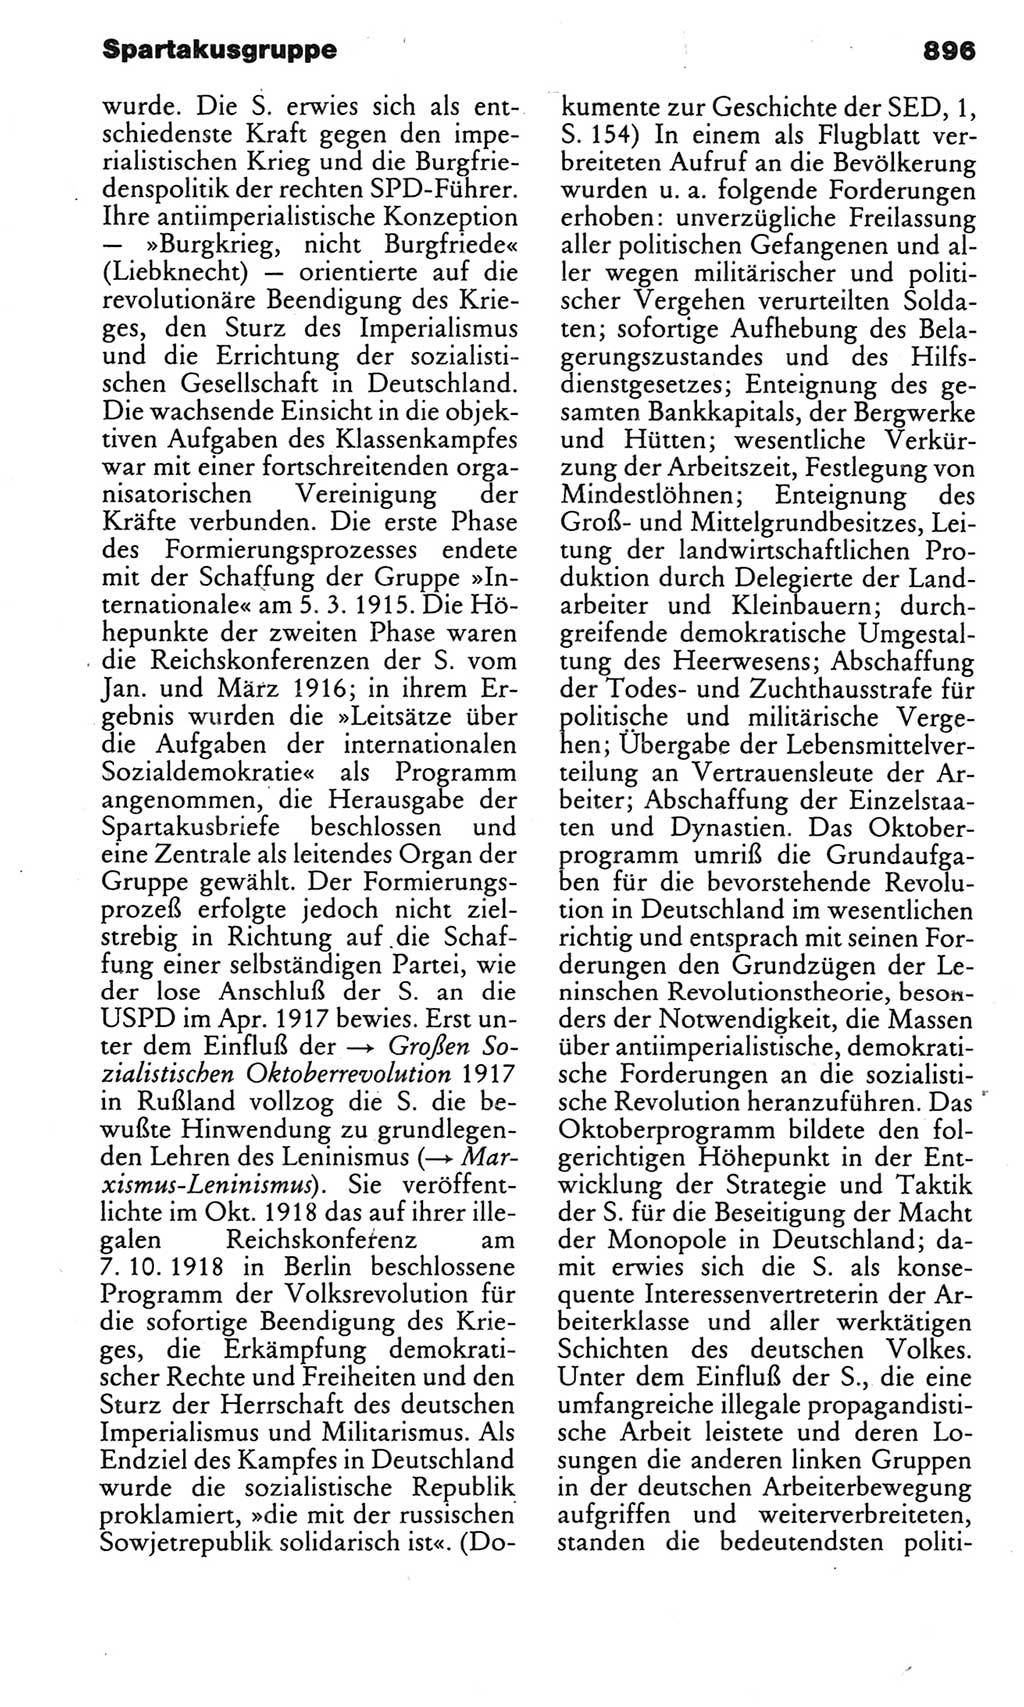 Kleines politisches Wörterbuch [Deutsche Demokratische Republik (DDR)] 1983, Seite 896 (Kl. pol. Wb. DDR 1983, S. 896)